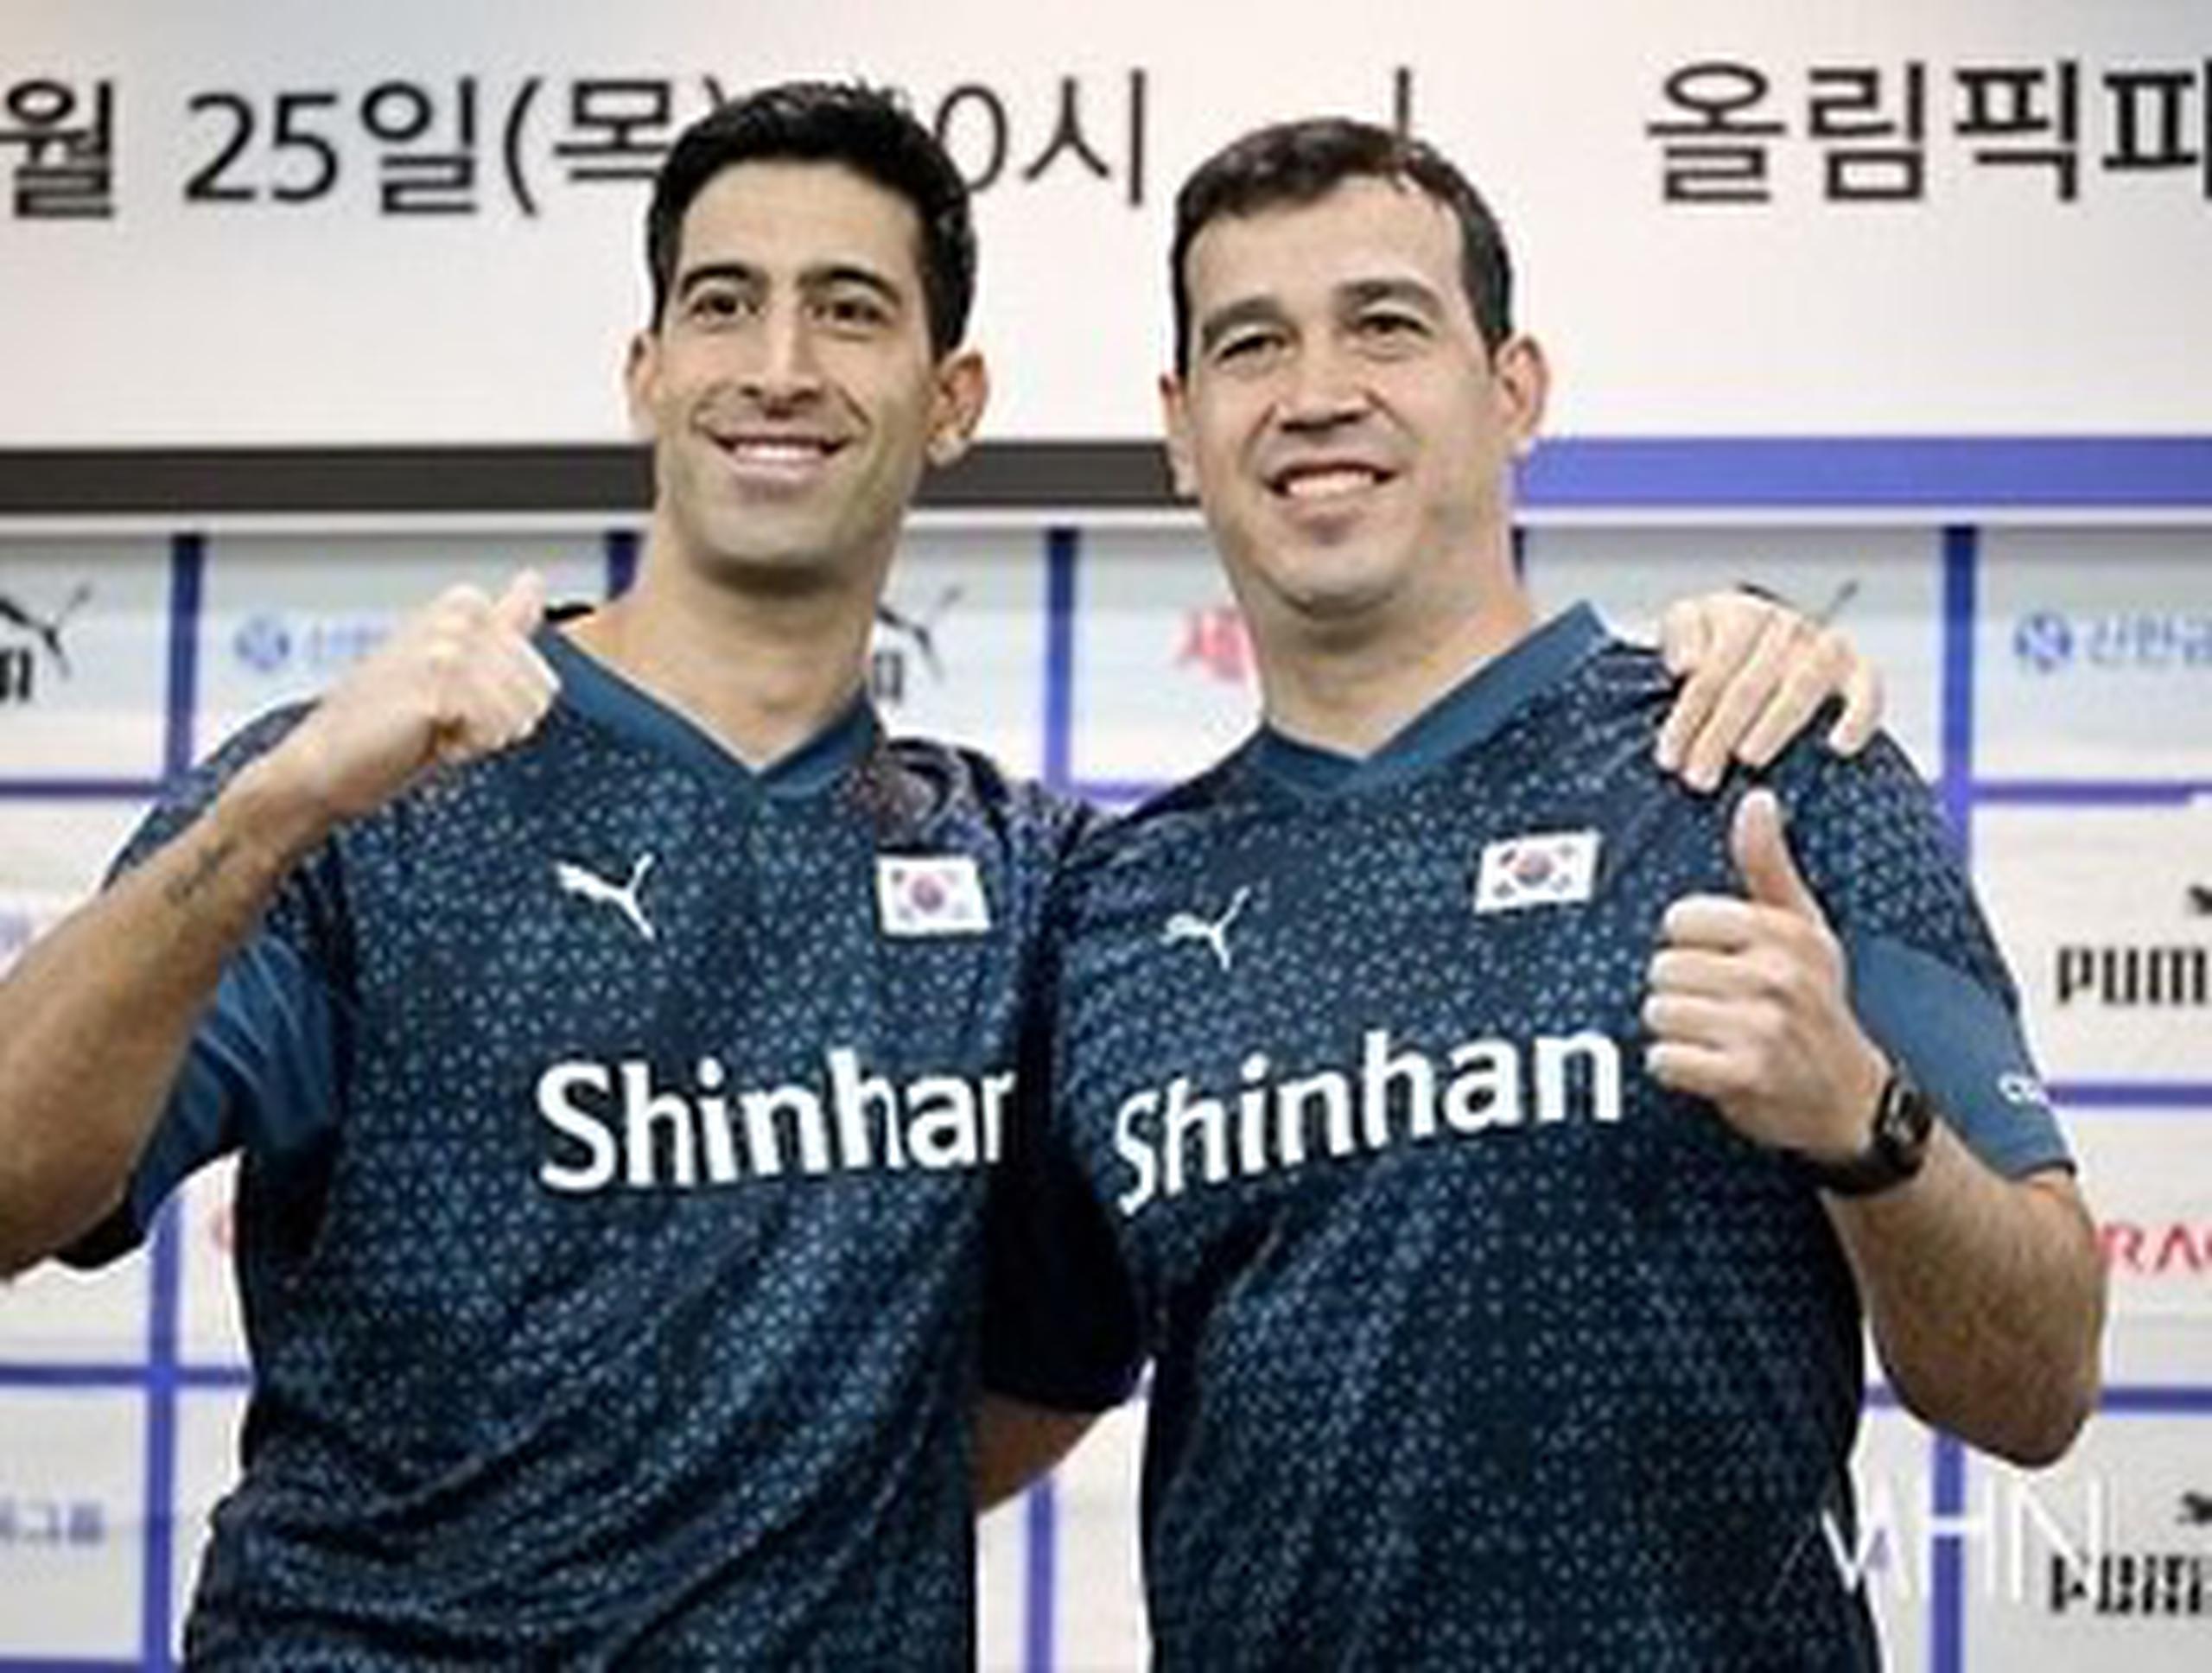 El brasileño  Isinaye Ramires y el boricua Fernando Morales fueron presentados en conjunto como los nuevos dirigentes de las selecciones nacionales de voleibol de Corea del Sur. Ramires dirigirá al equipo masculino y Morales al femenino. (Suministrada / Fernando Morales)